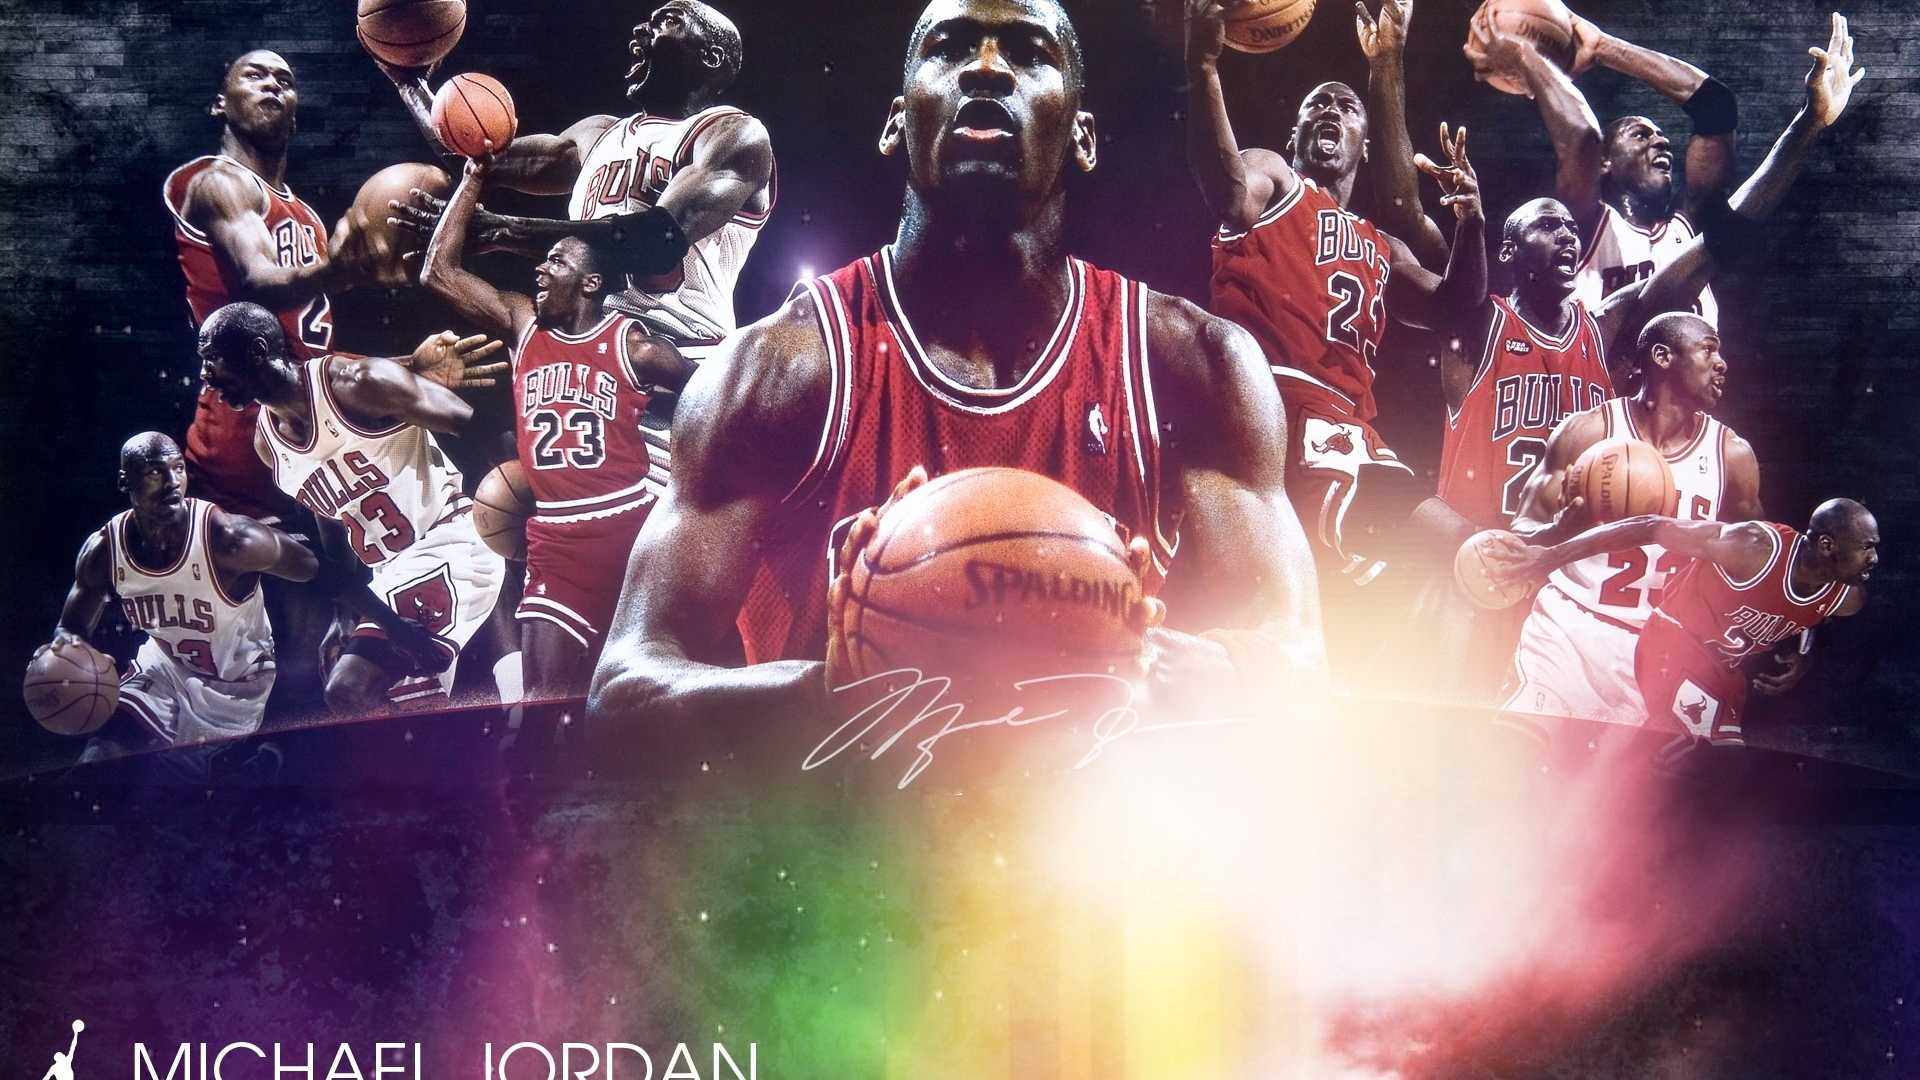 2014年NBA全明星赛壁纸